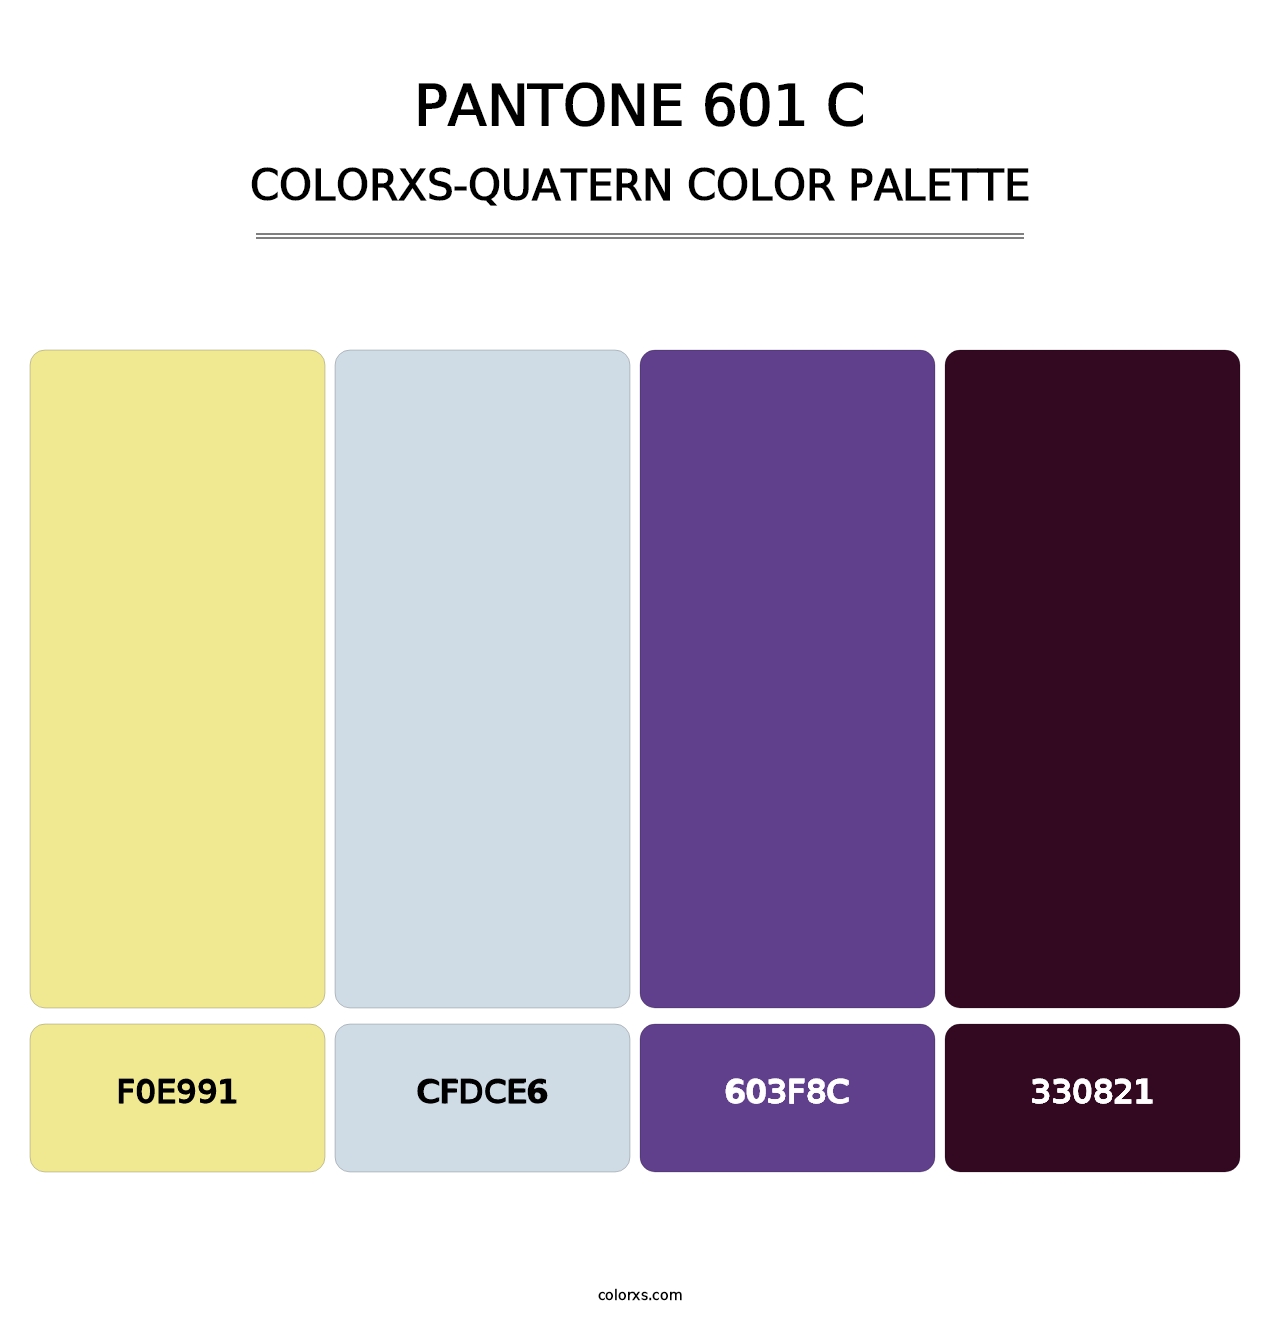 PANTONE 601 C - Colorxs Quatern Palette